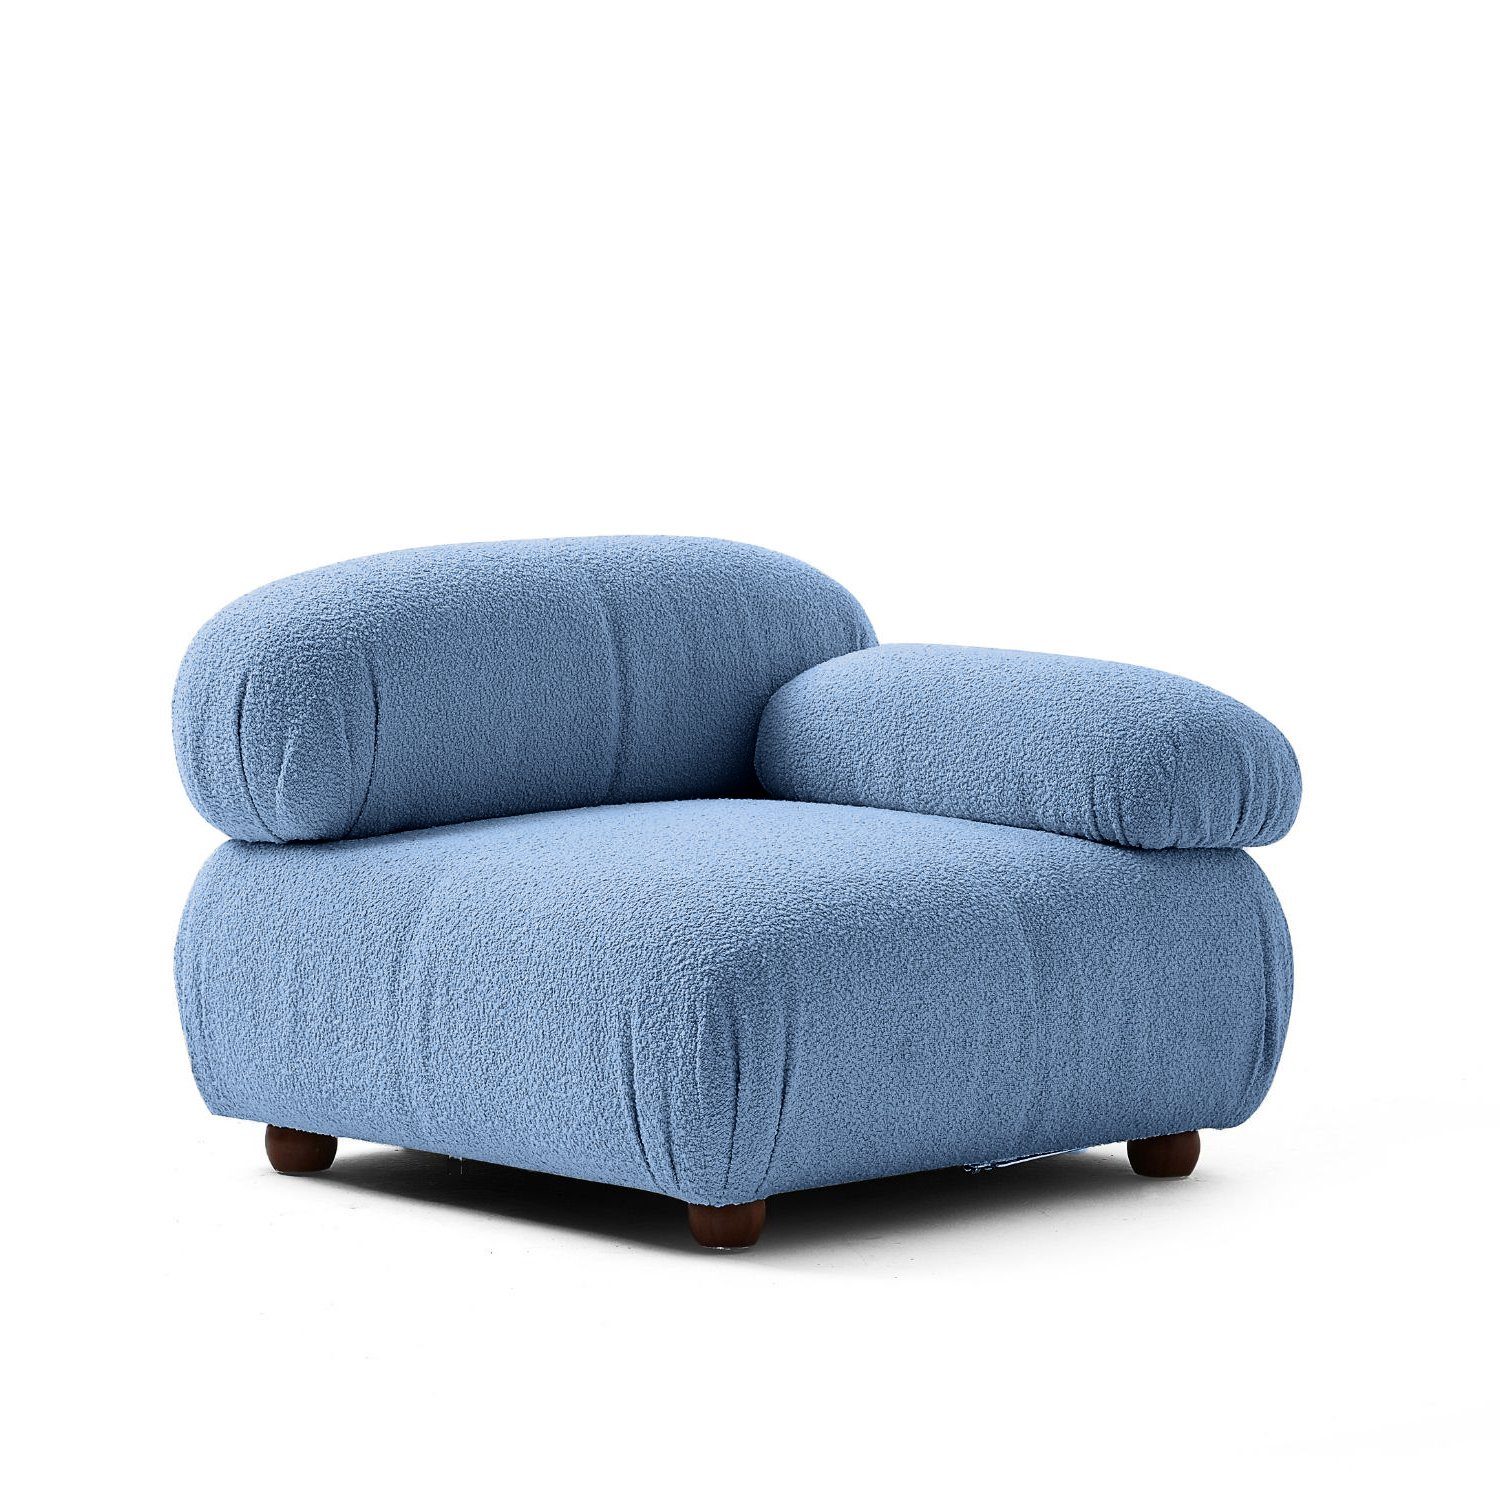 Touch me Sofa Knuffiges Sitzmöbel neueste Generation aus Komfortschaum Blau-Marine-Lieferung und Aufbau im Preis enthalten!